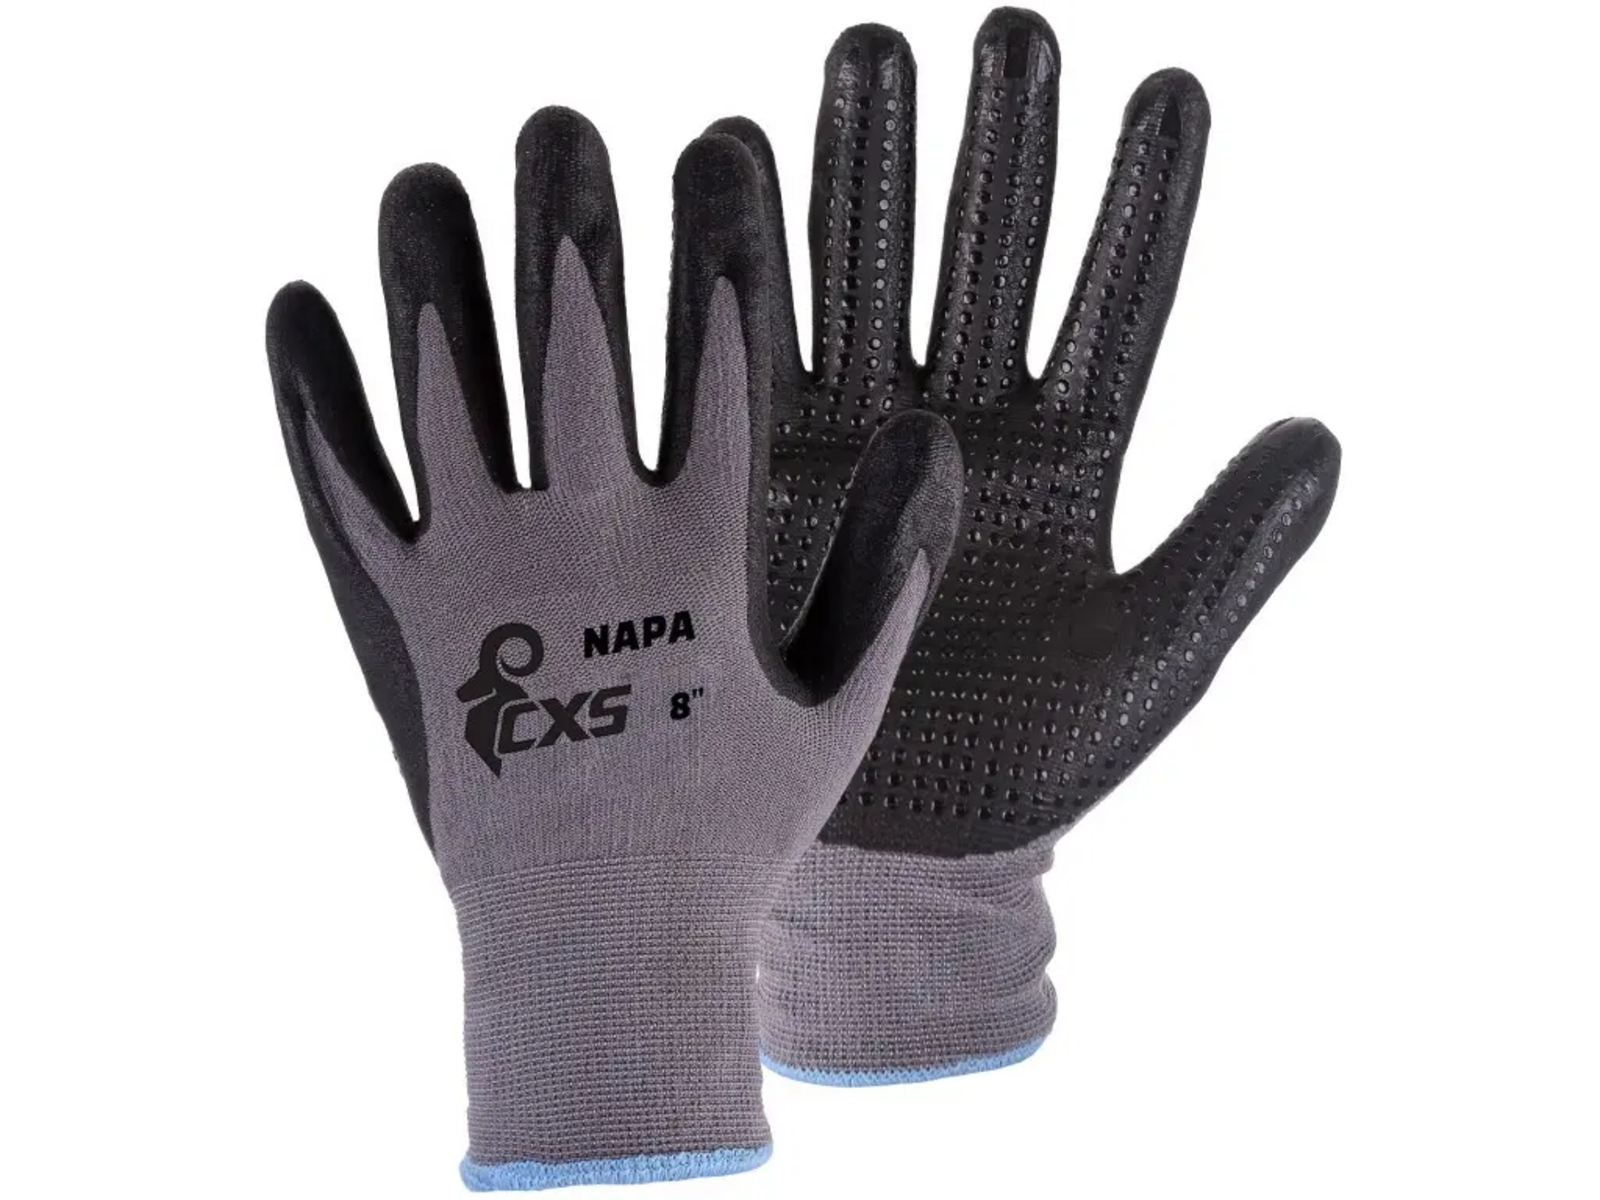 Povrstvené rukavice CXS Napa - veľkosť: 7/S, farba: sivá/čierna